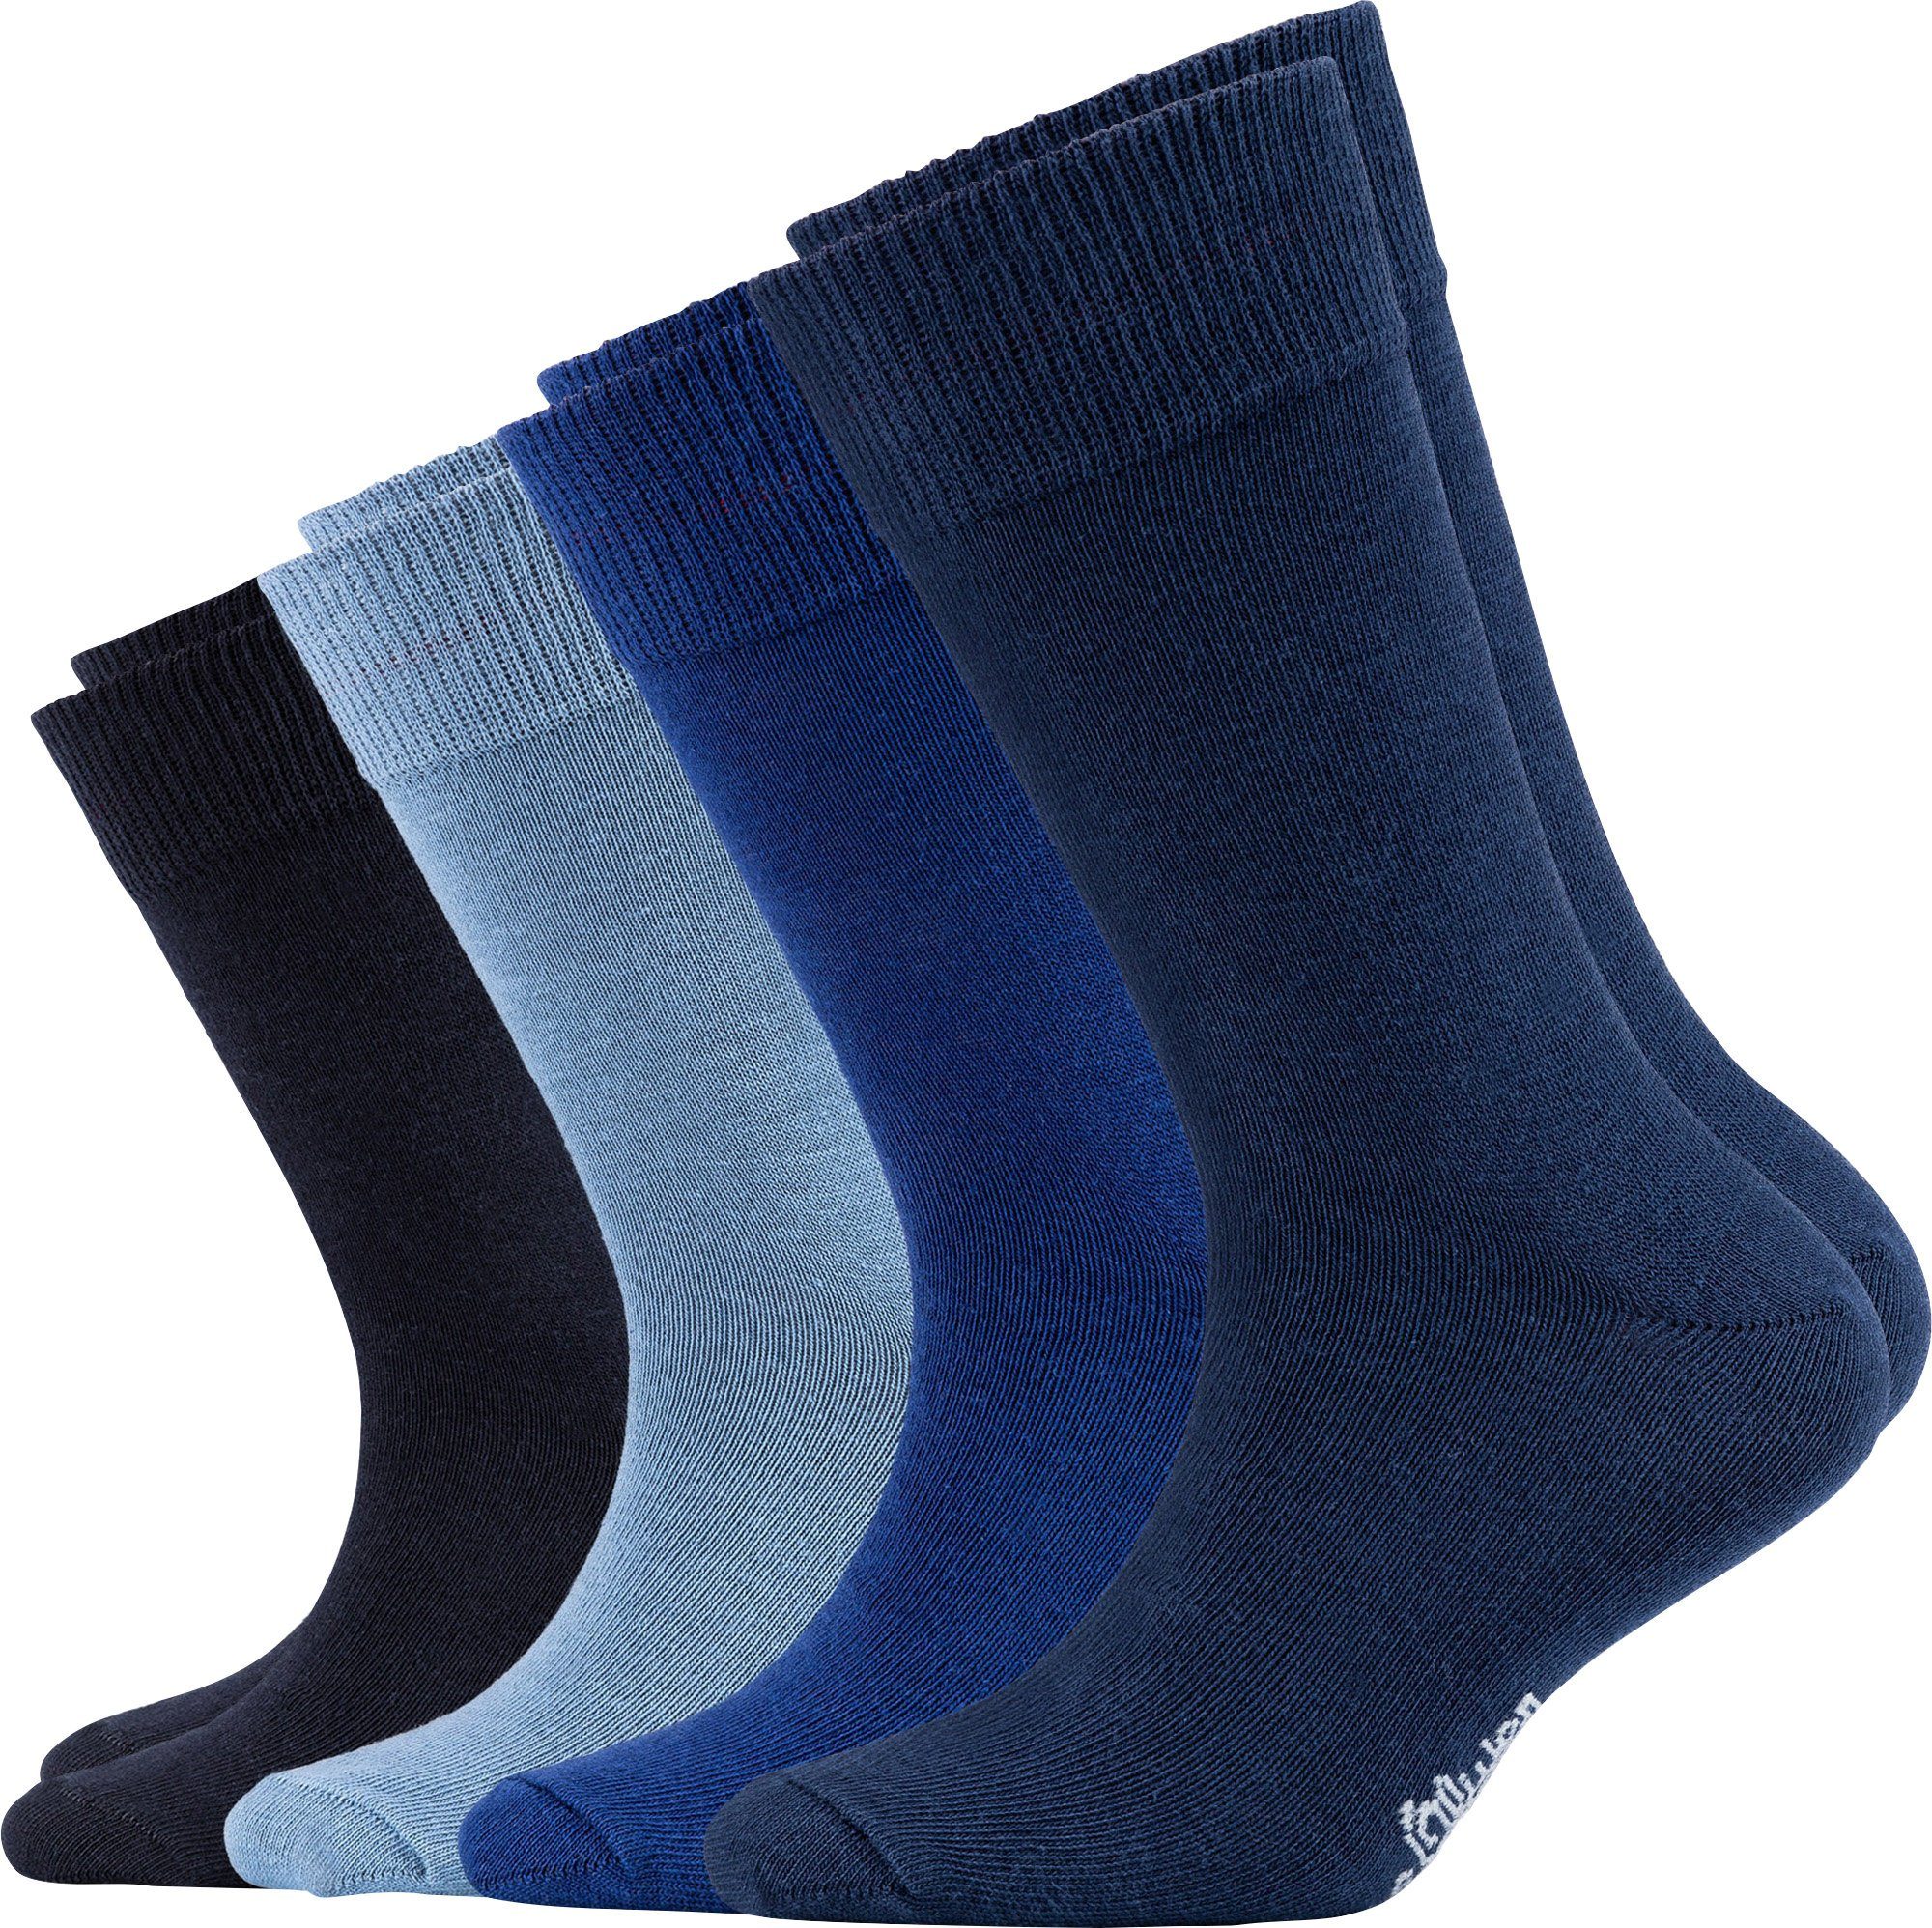 Paar s.Oliver Uni 4 Socken marine/blau Kinder-Socken